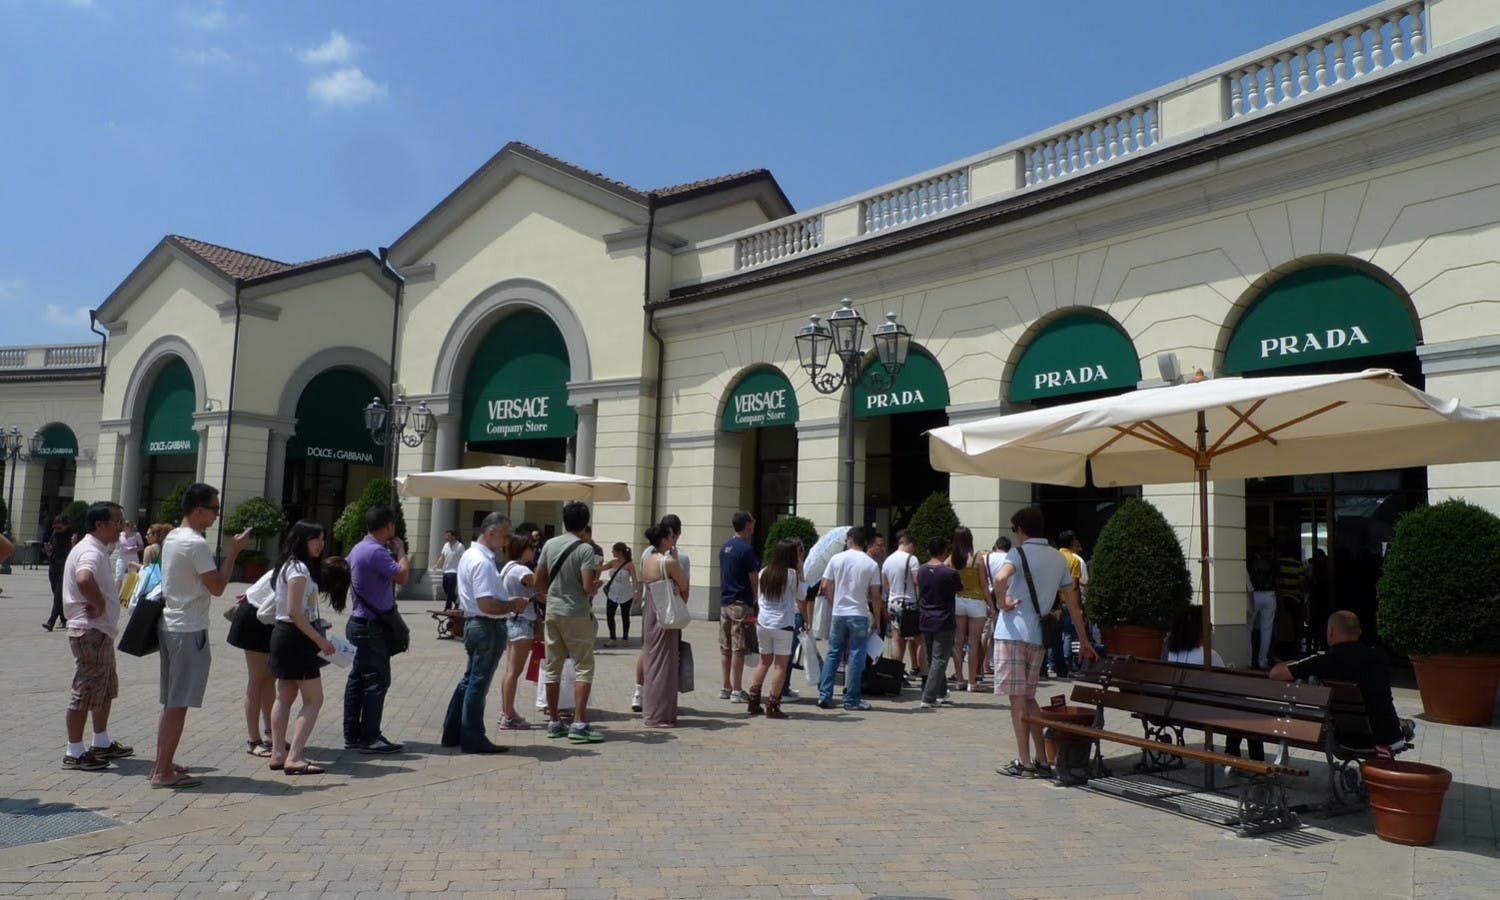 Designer Outlet en Serravalle: ruta de compras desde Milán